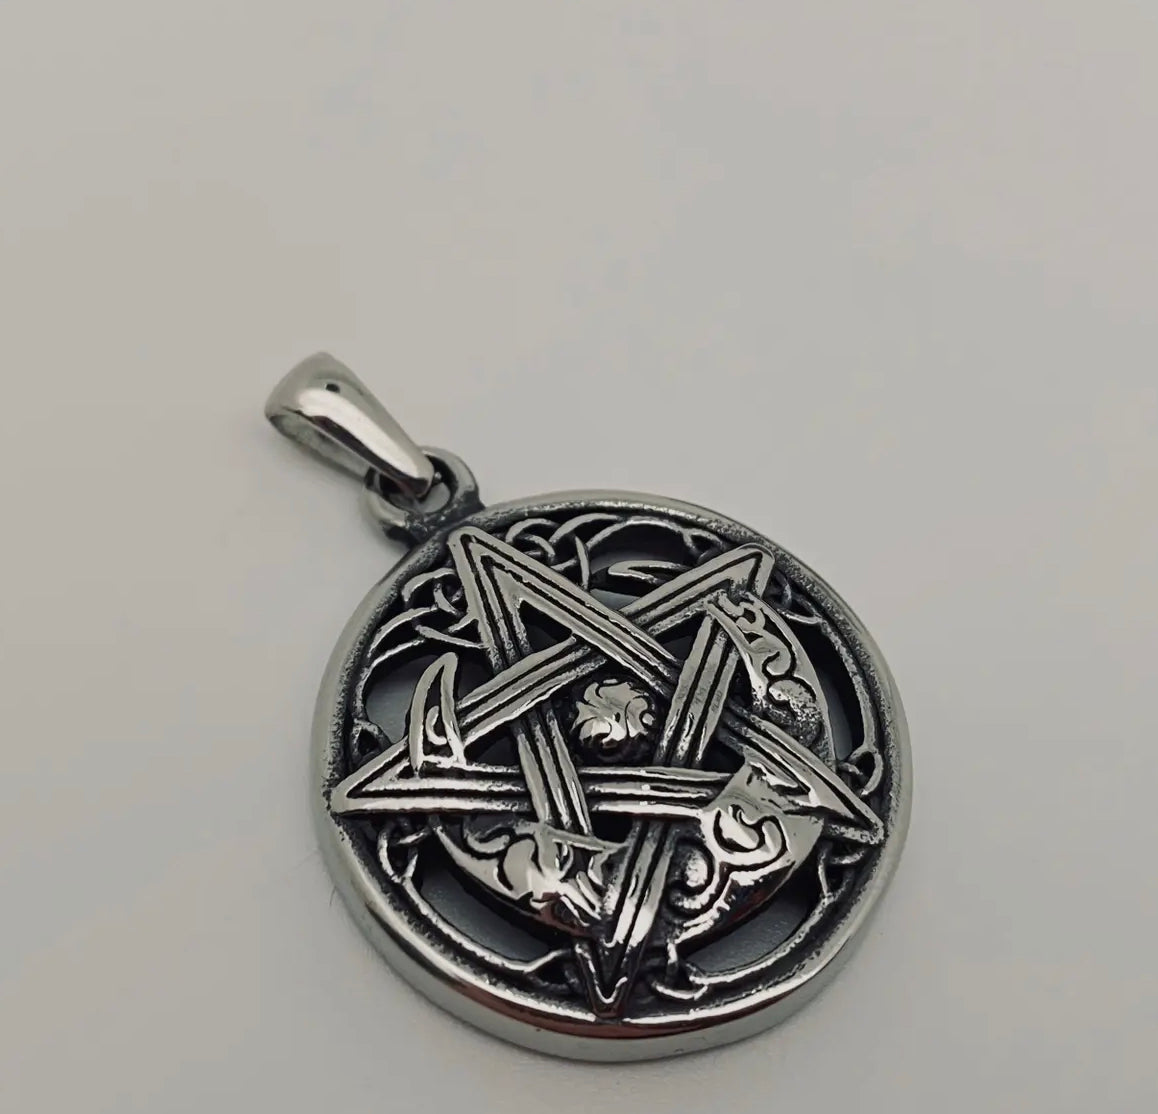 Lunar Pentacle Celtic Knot Pendant